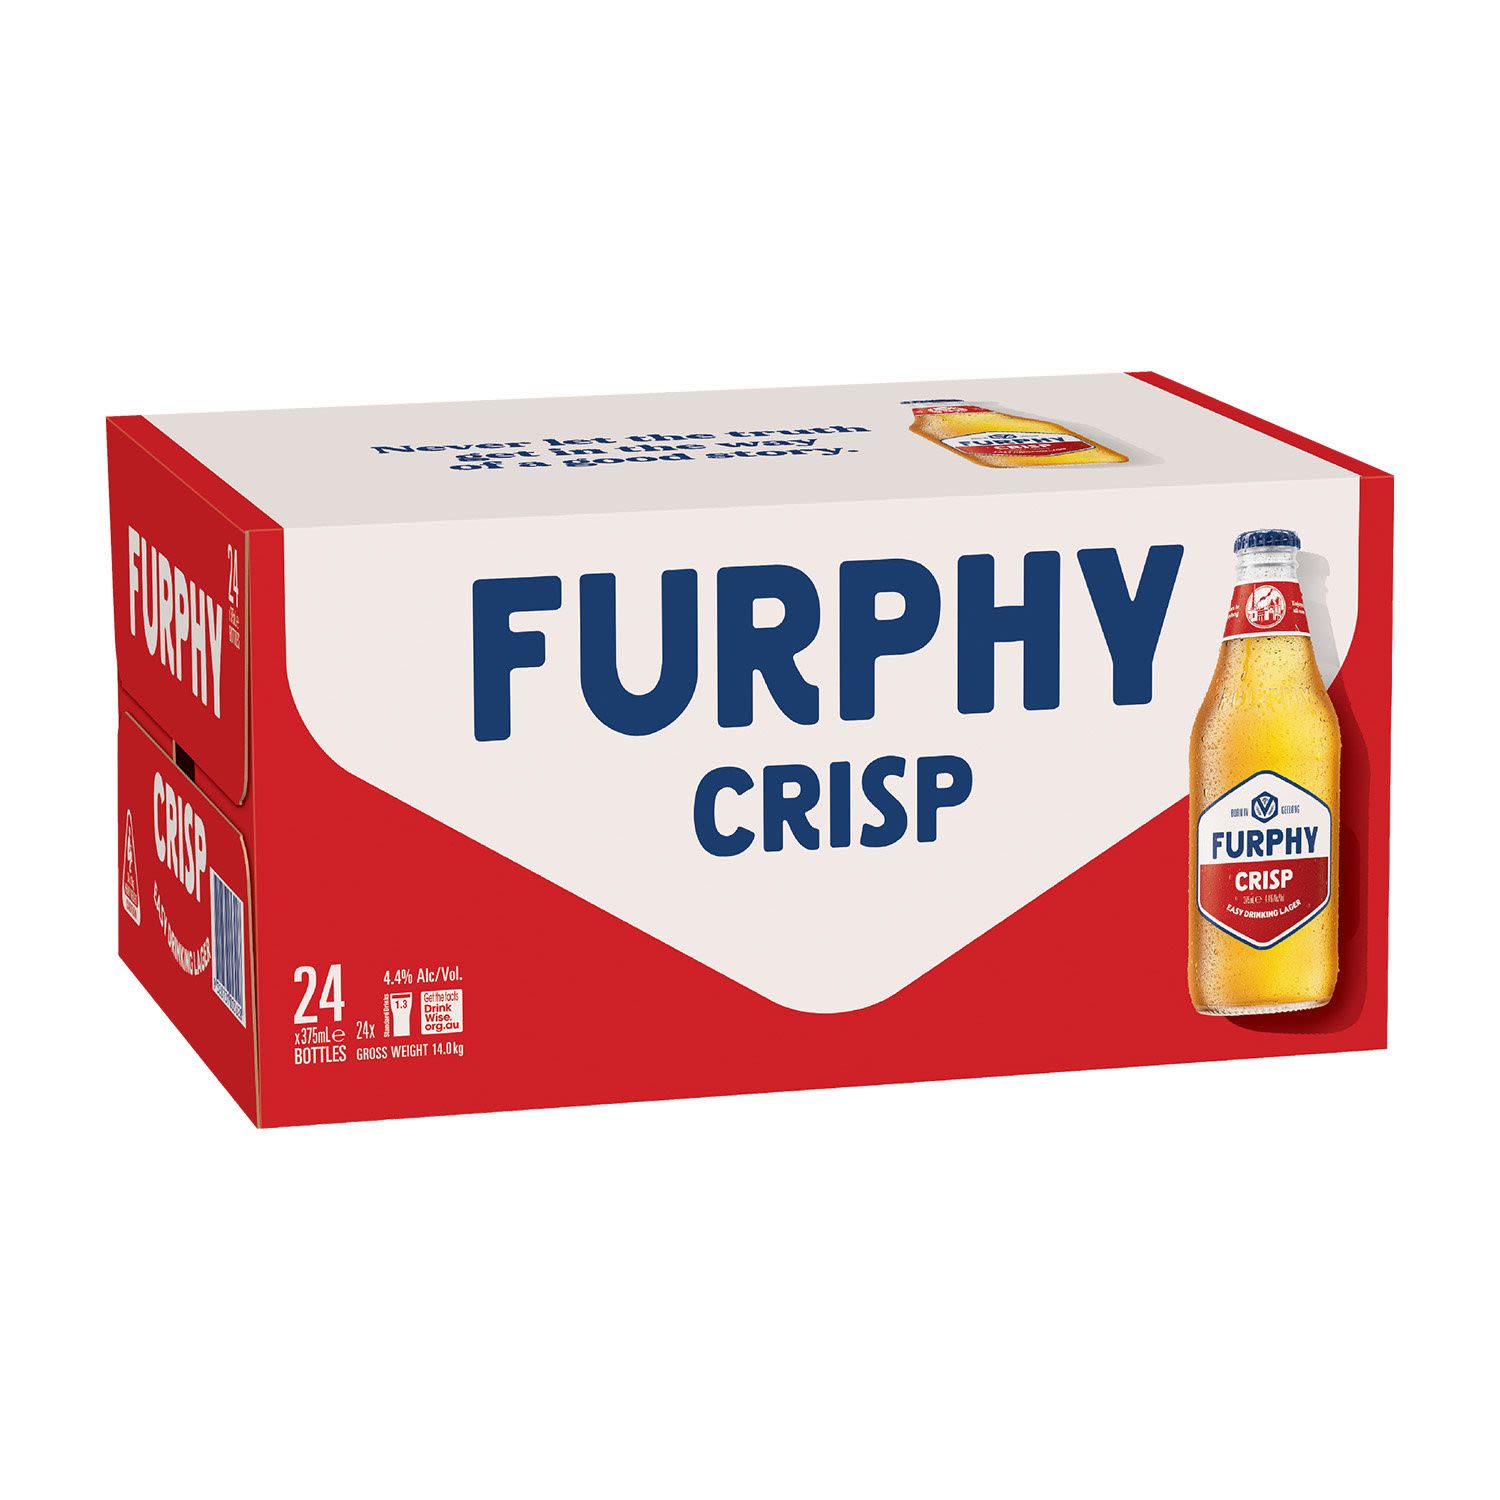 Furphy Crisp Lager Bottle 375mL 24 Pack